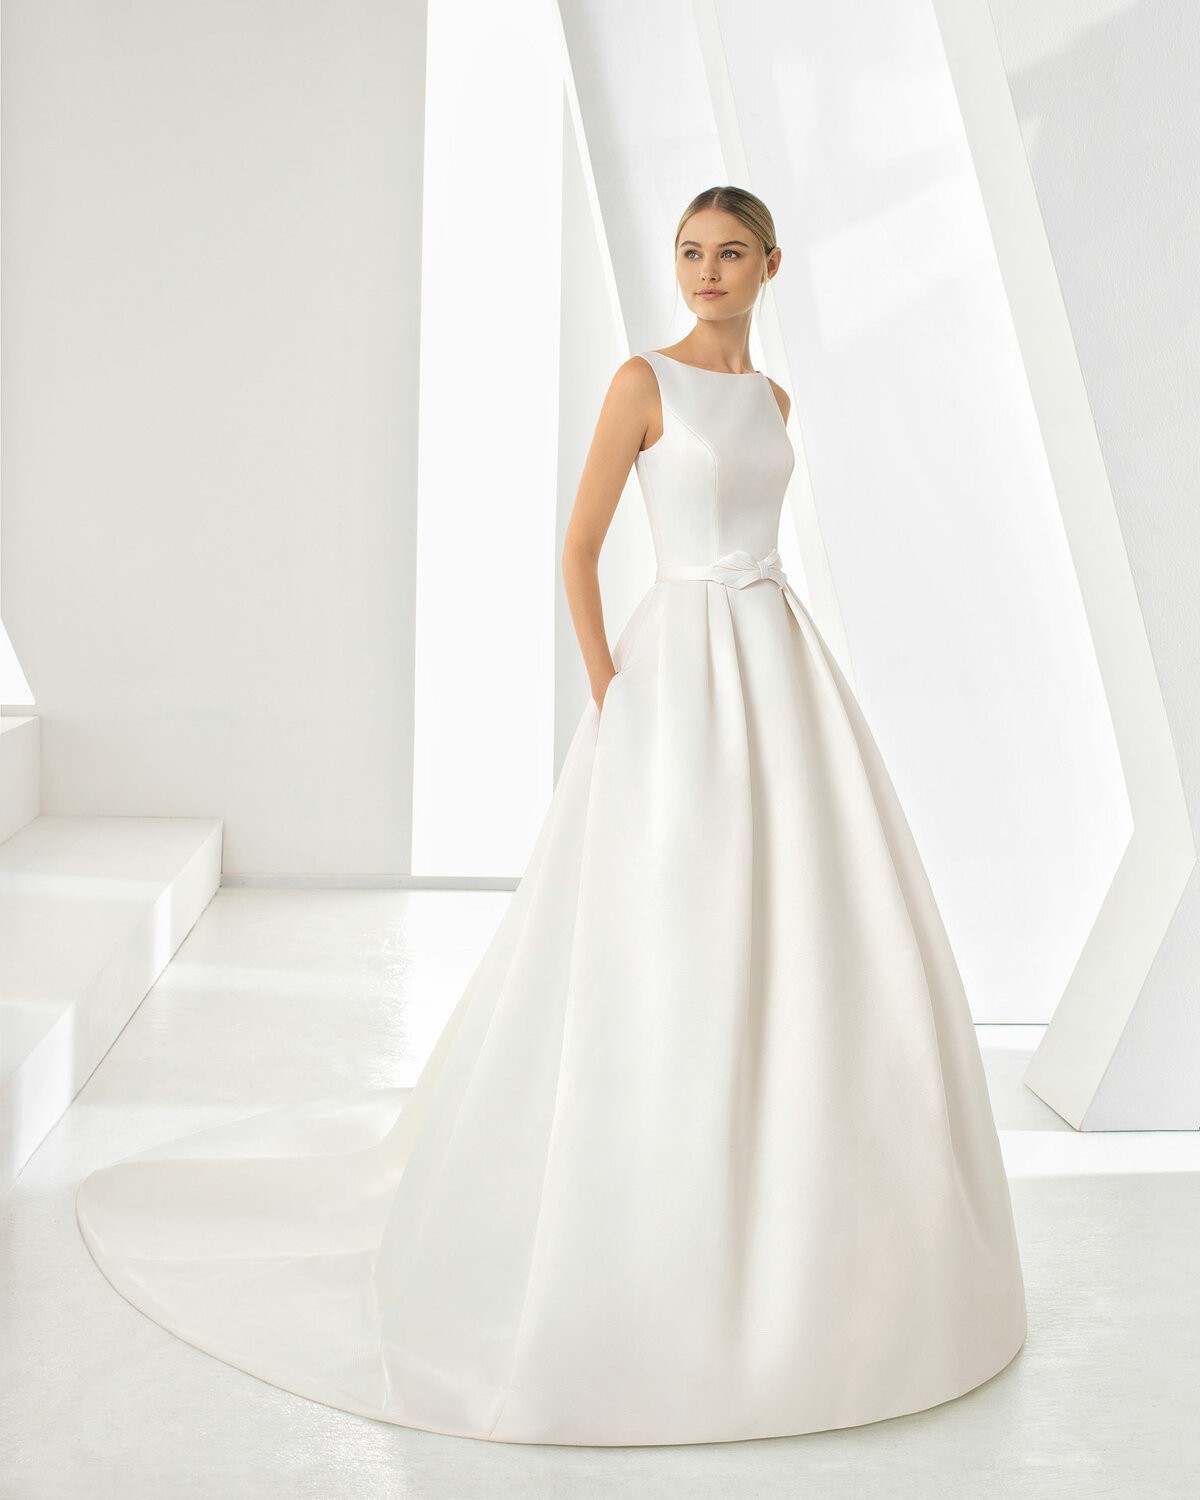 DOROTHY - abito da sposa collezione 2020 - Rosa Clarà